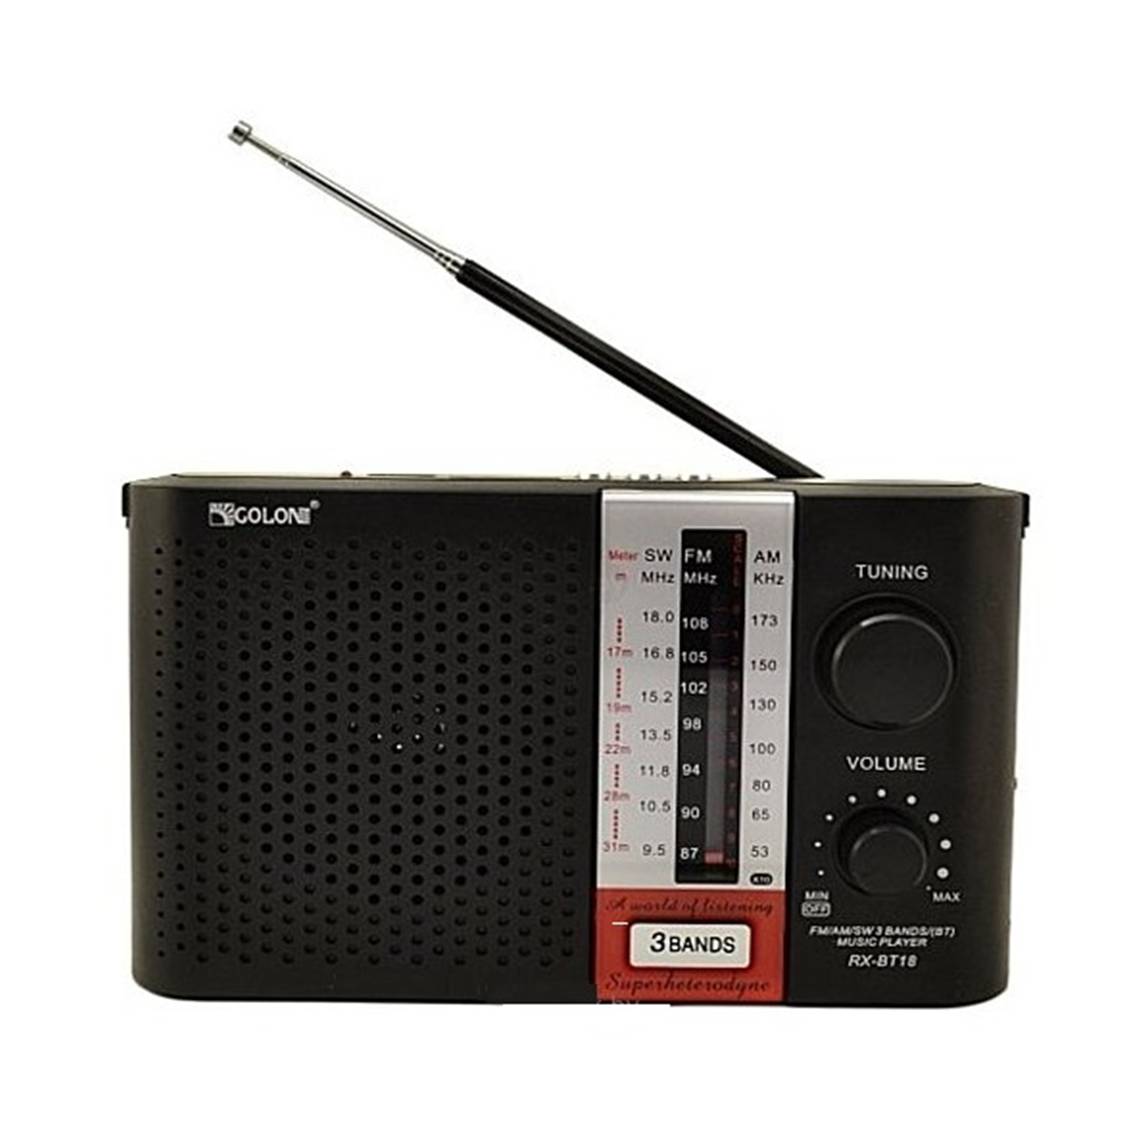 رادیو گولون مدل RX-BT18